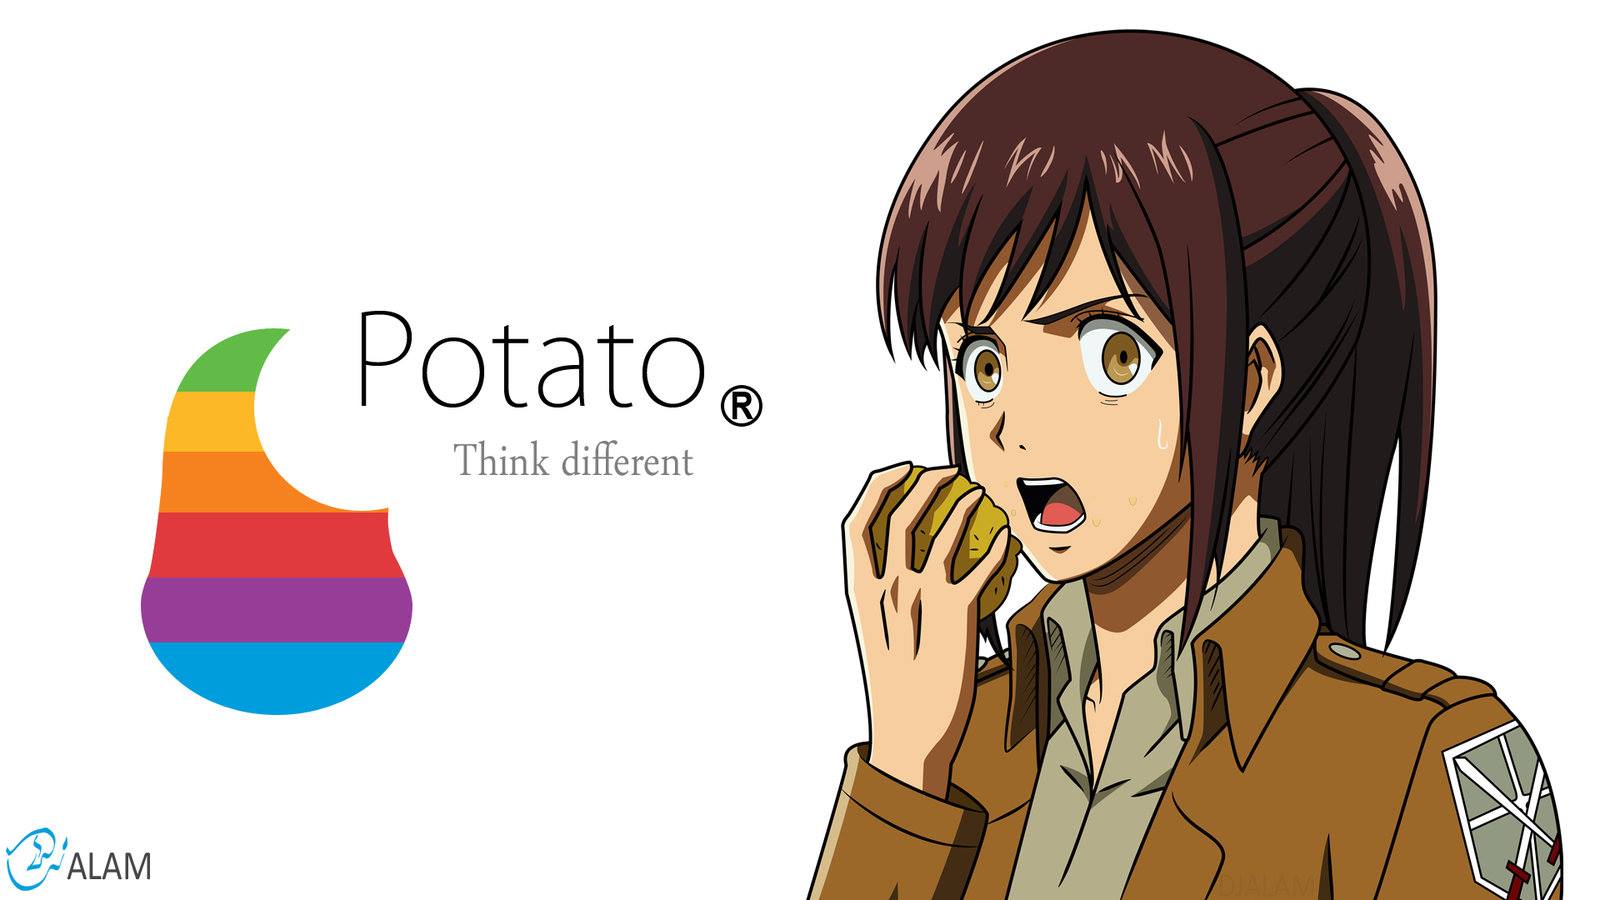 Potato girl!